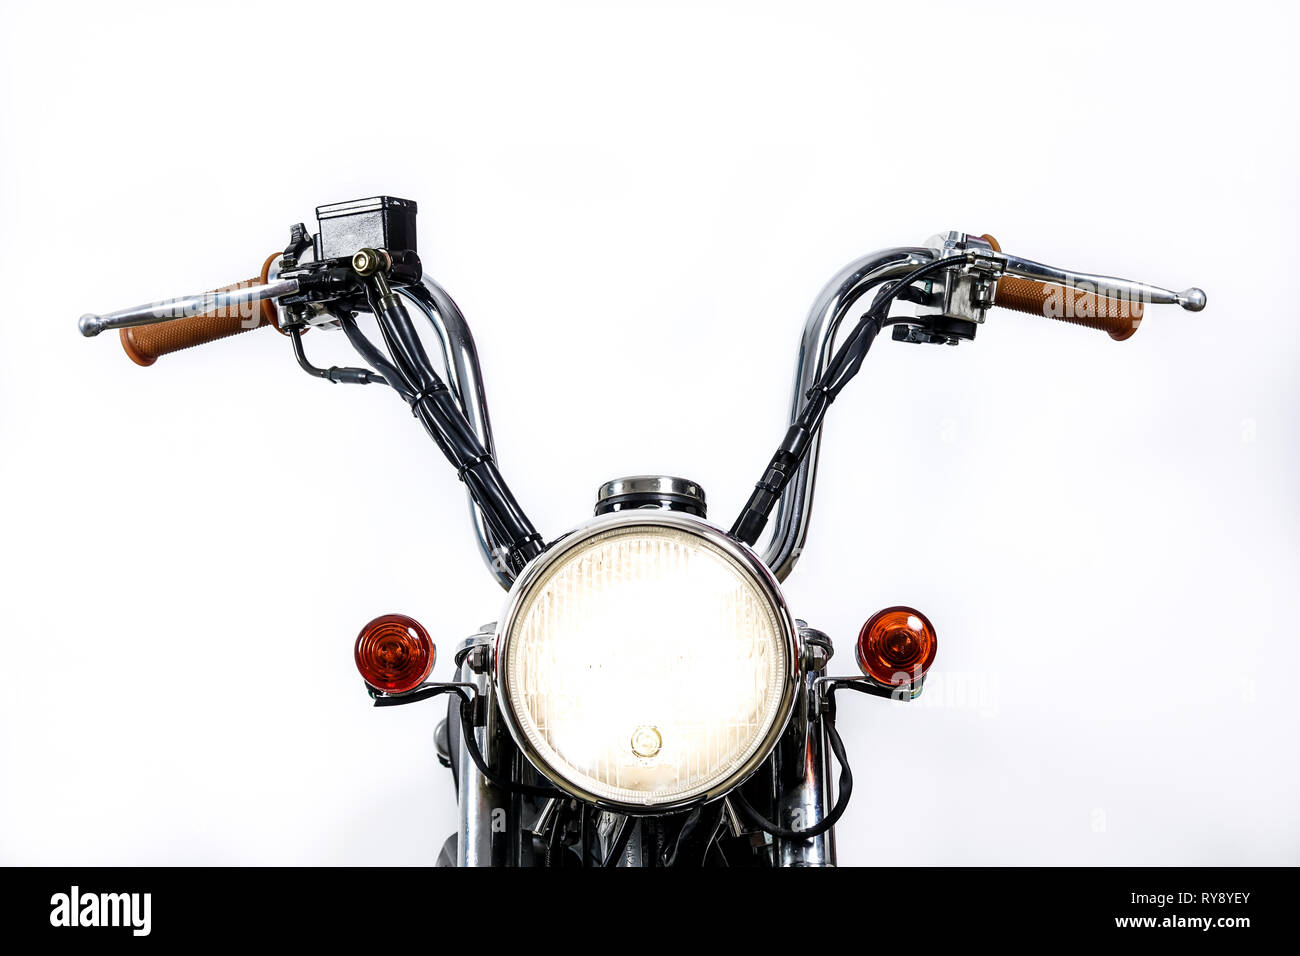 Close up de phare sur une moto vintage. Chopper personnalisé / scrambler motocross. Moto rétro sur fond blanc. Copie vierge de l'espace pour le texte. Banque D'Images